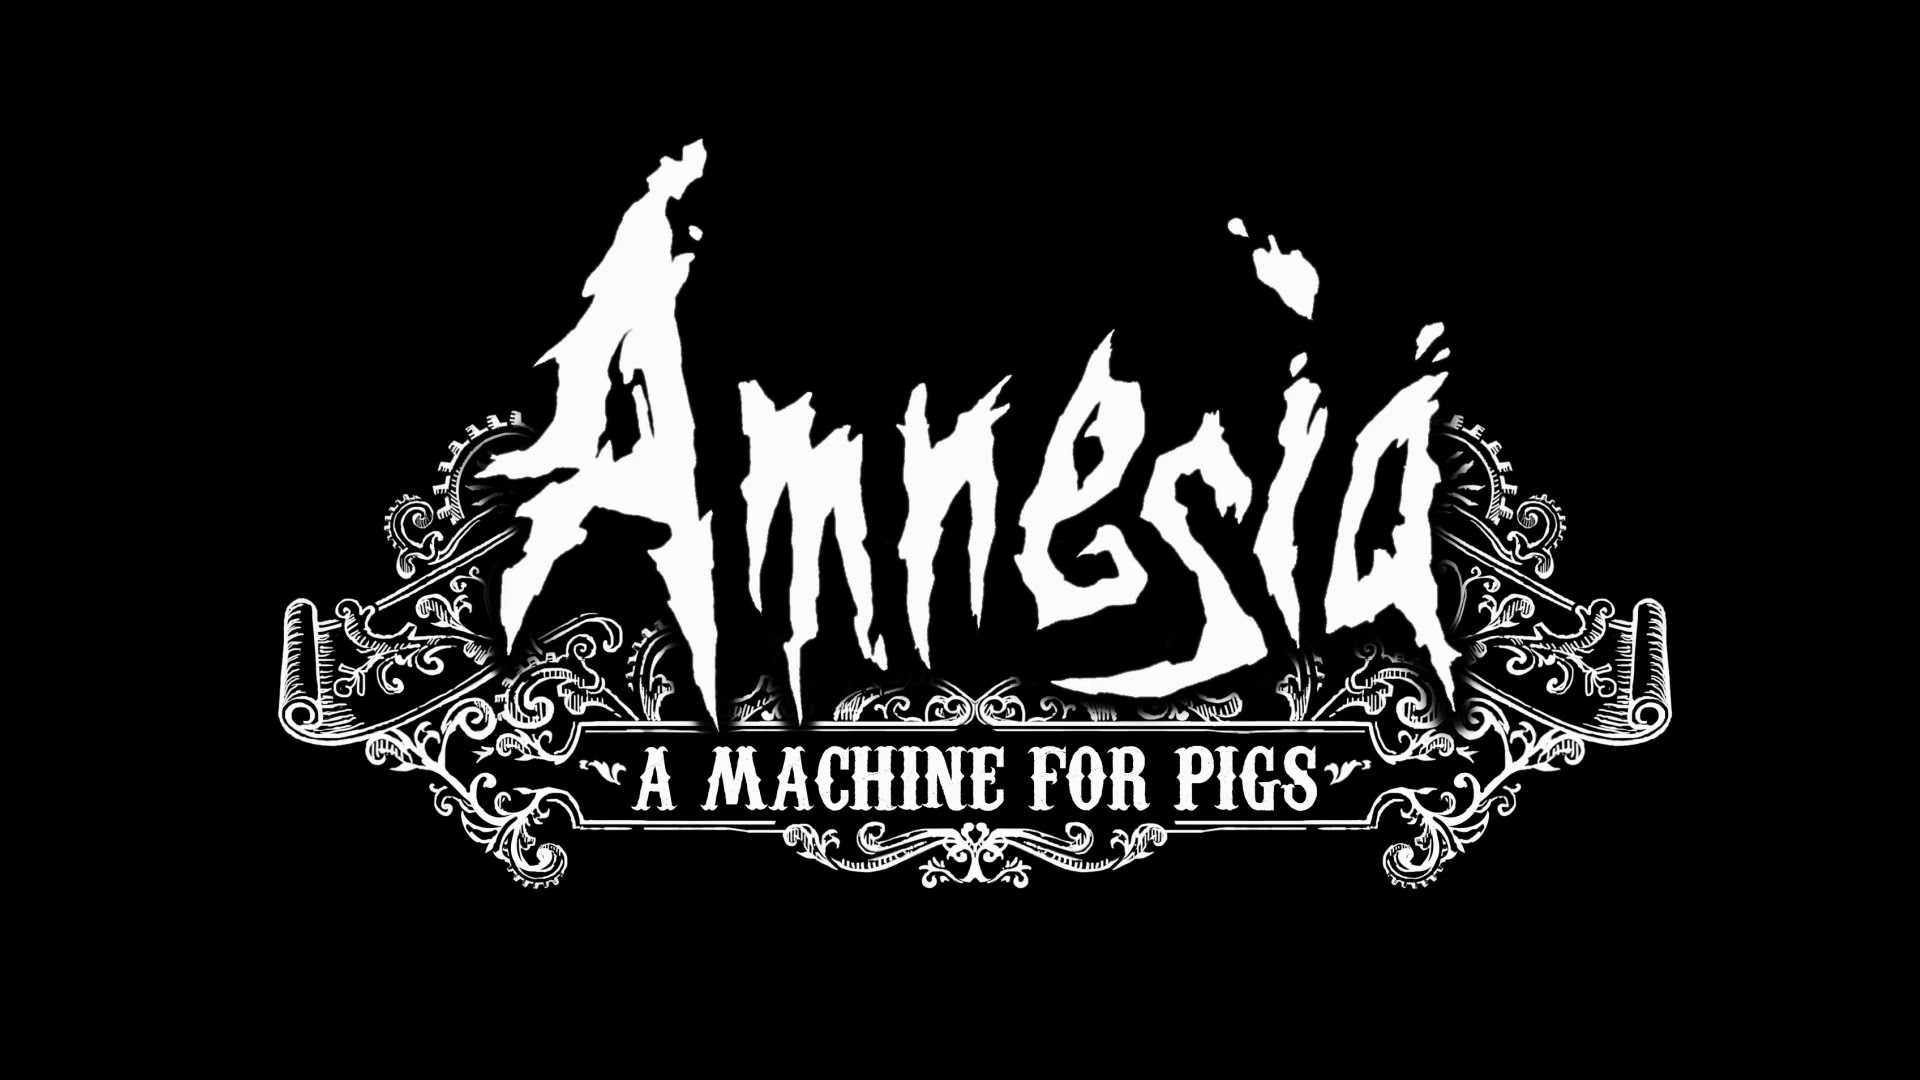 Obrint les comportes. Amnesia: A machine for pigs #10 de El cuiner mut